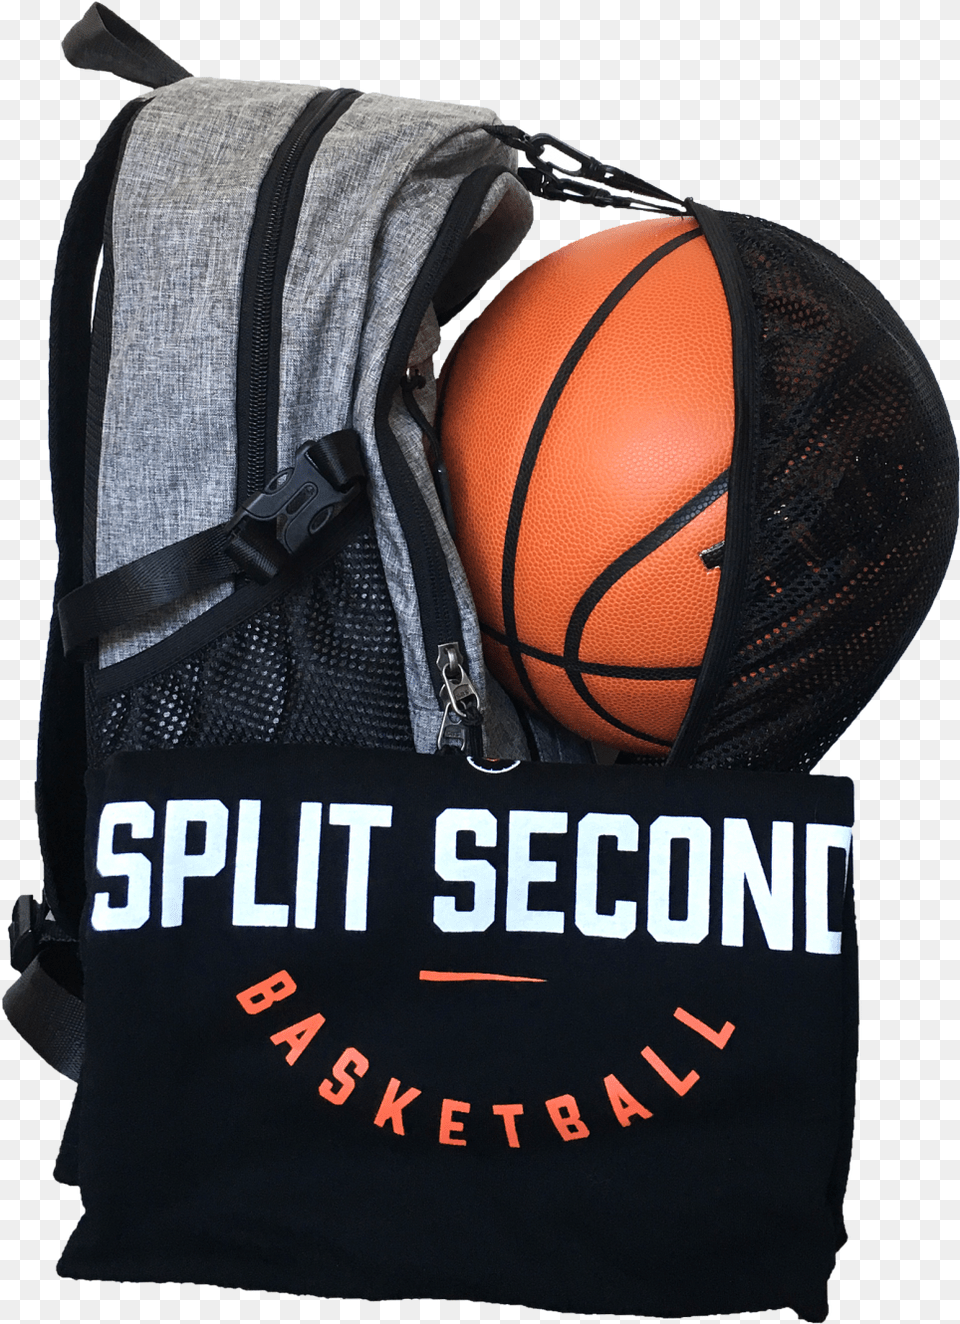 Our Site Links, Bag, Ball, Basketball, Basketball (ball) Png